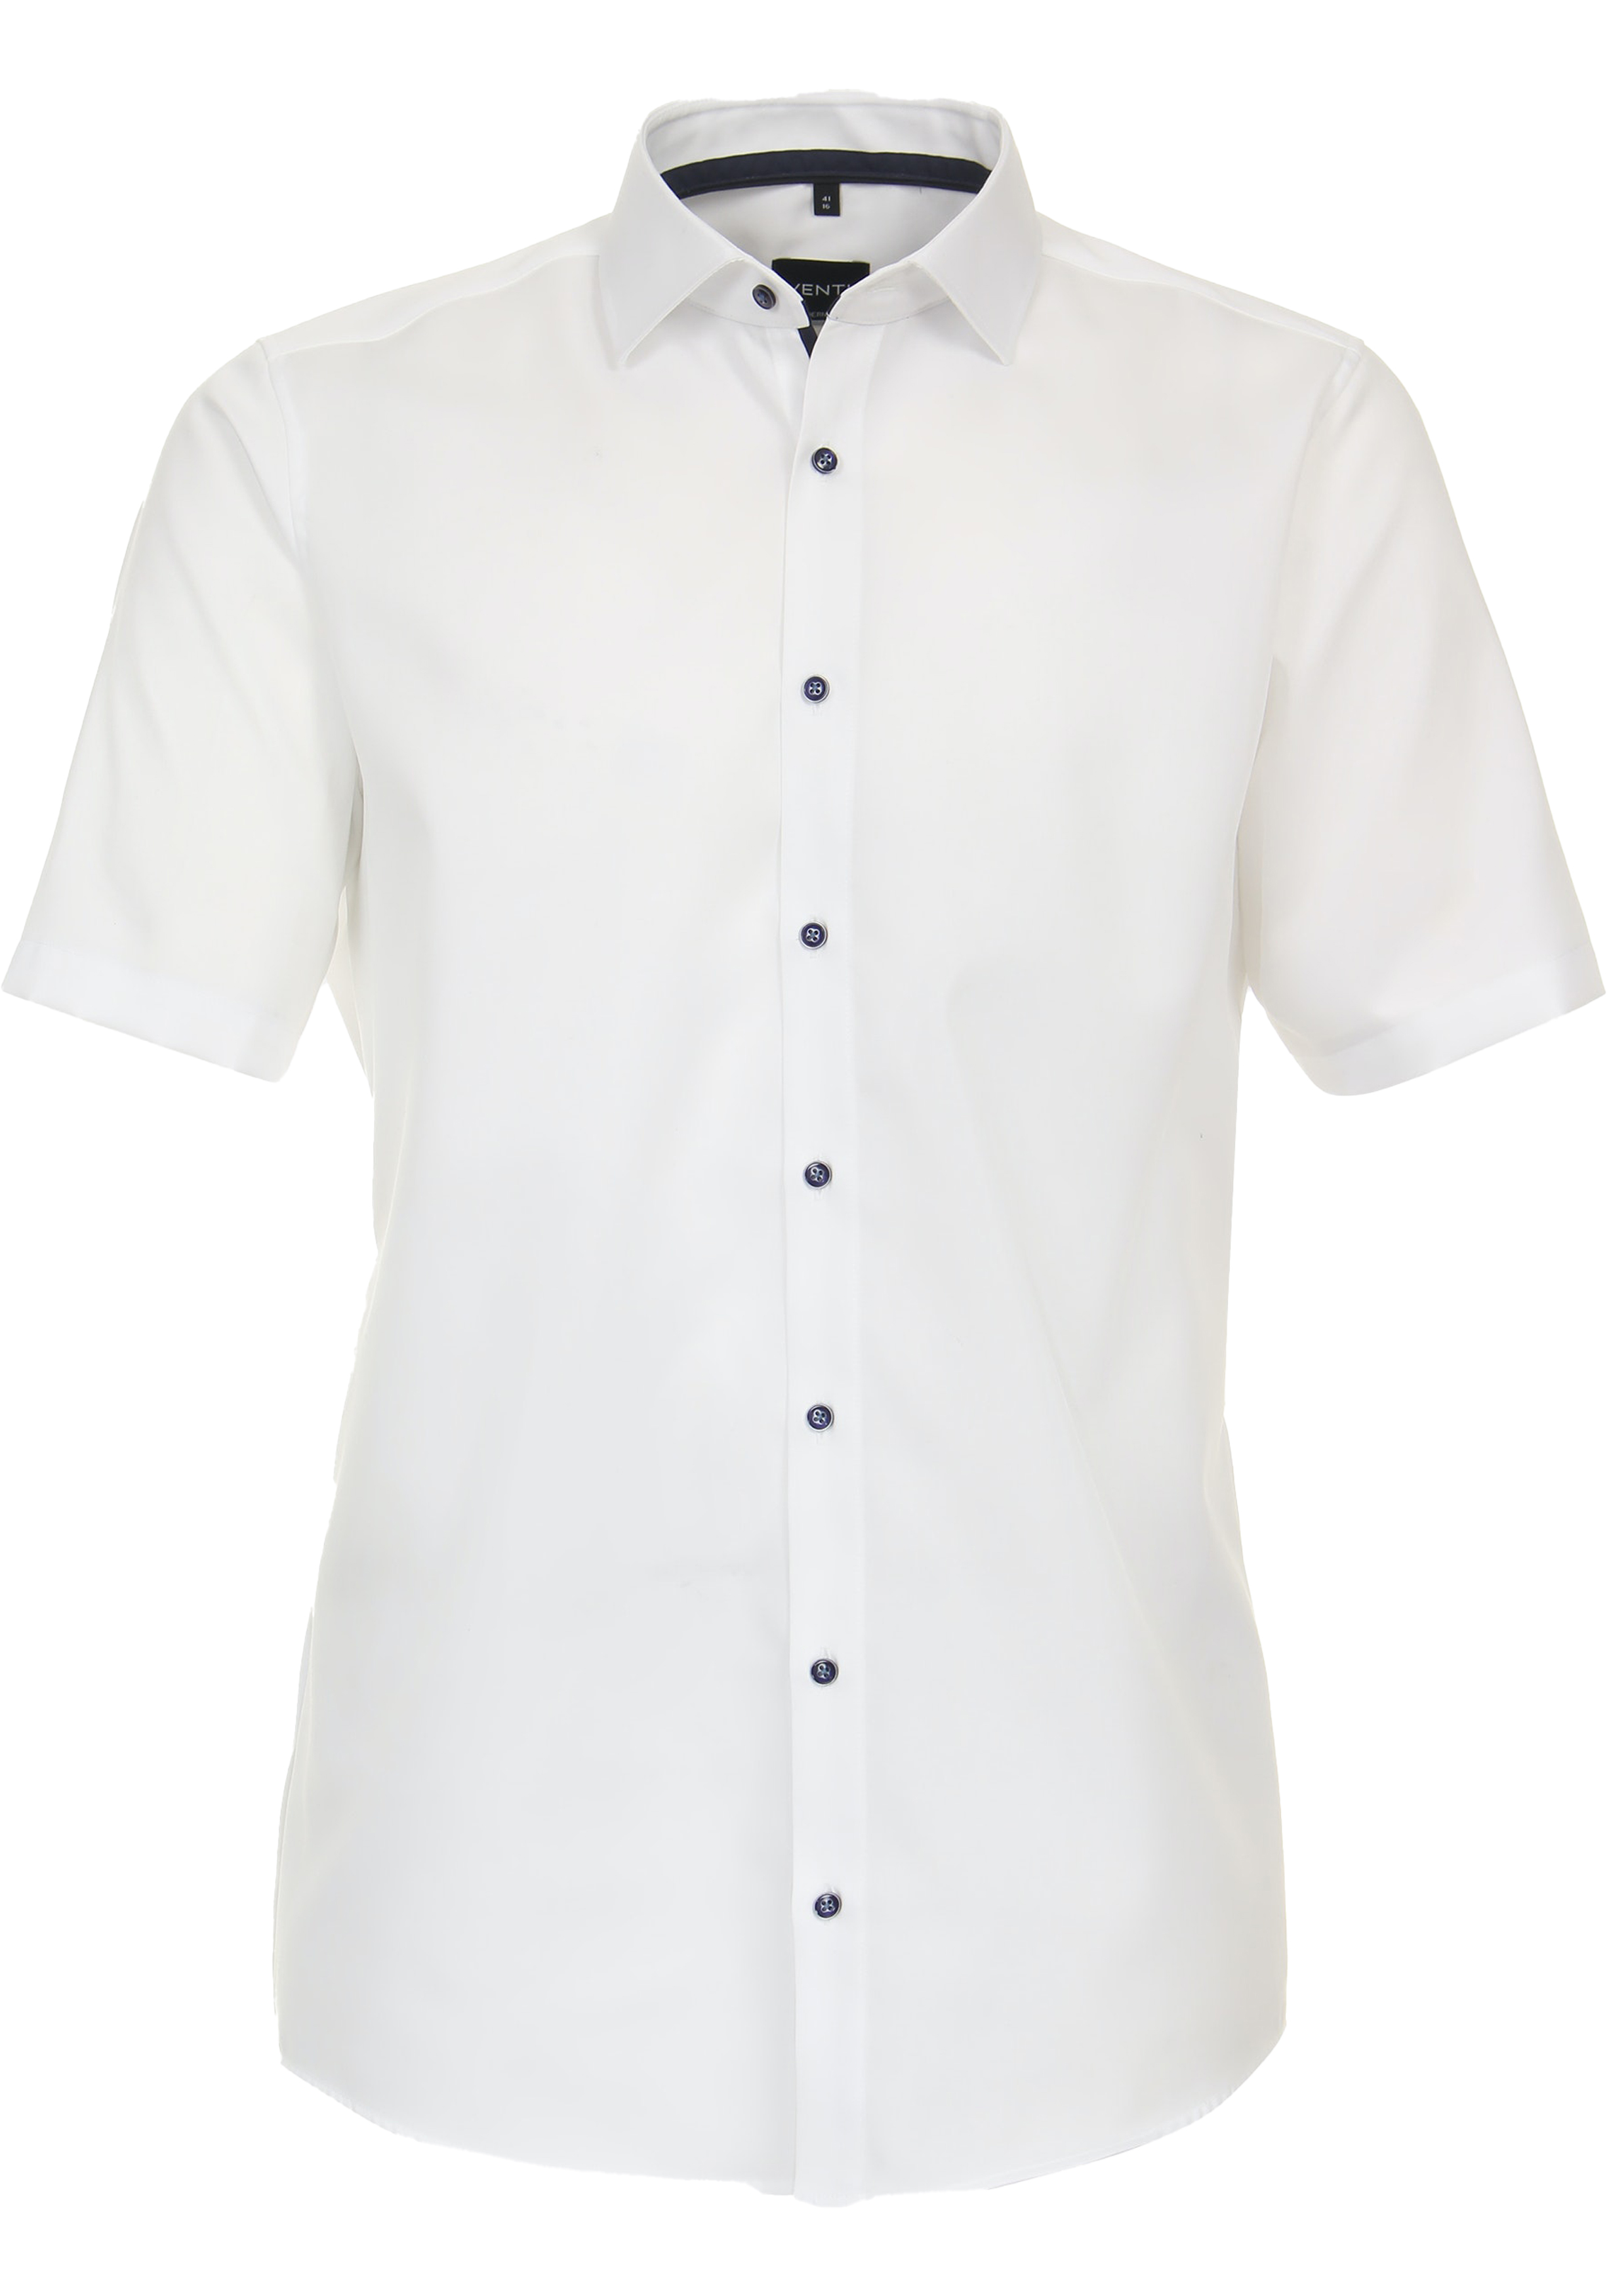 VENTI modern fit overhemd, korte mouw, dobby, wit